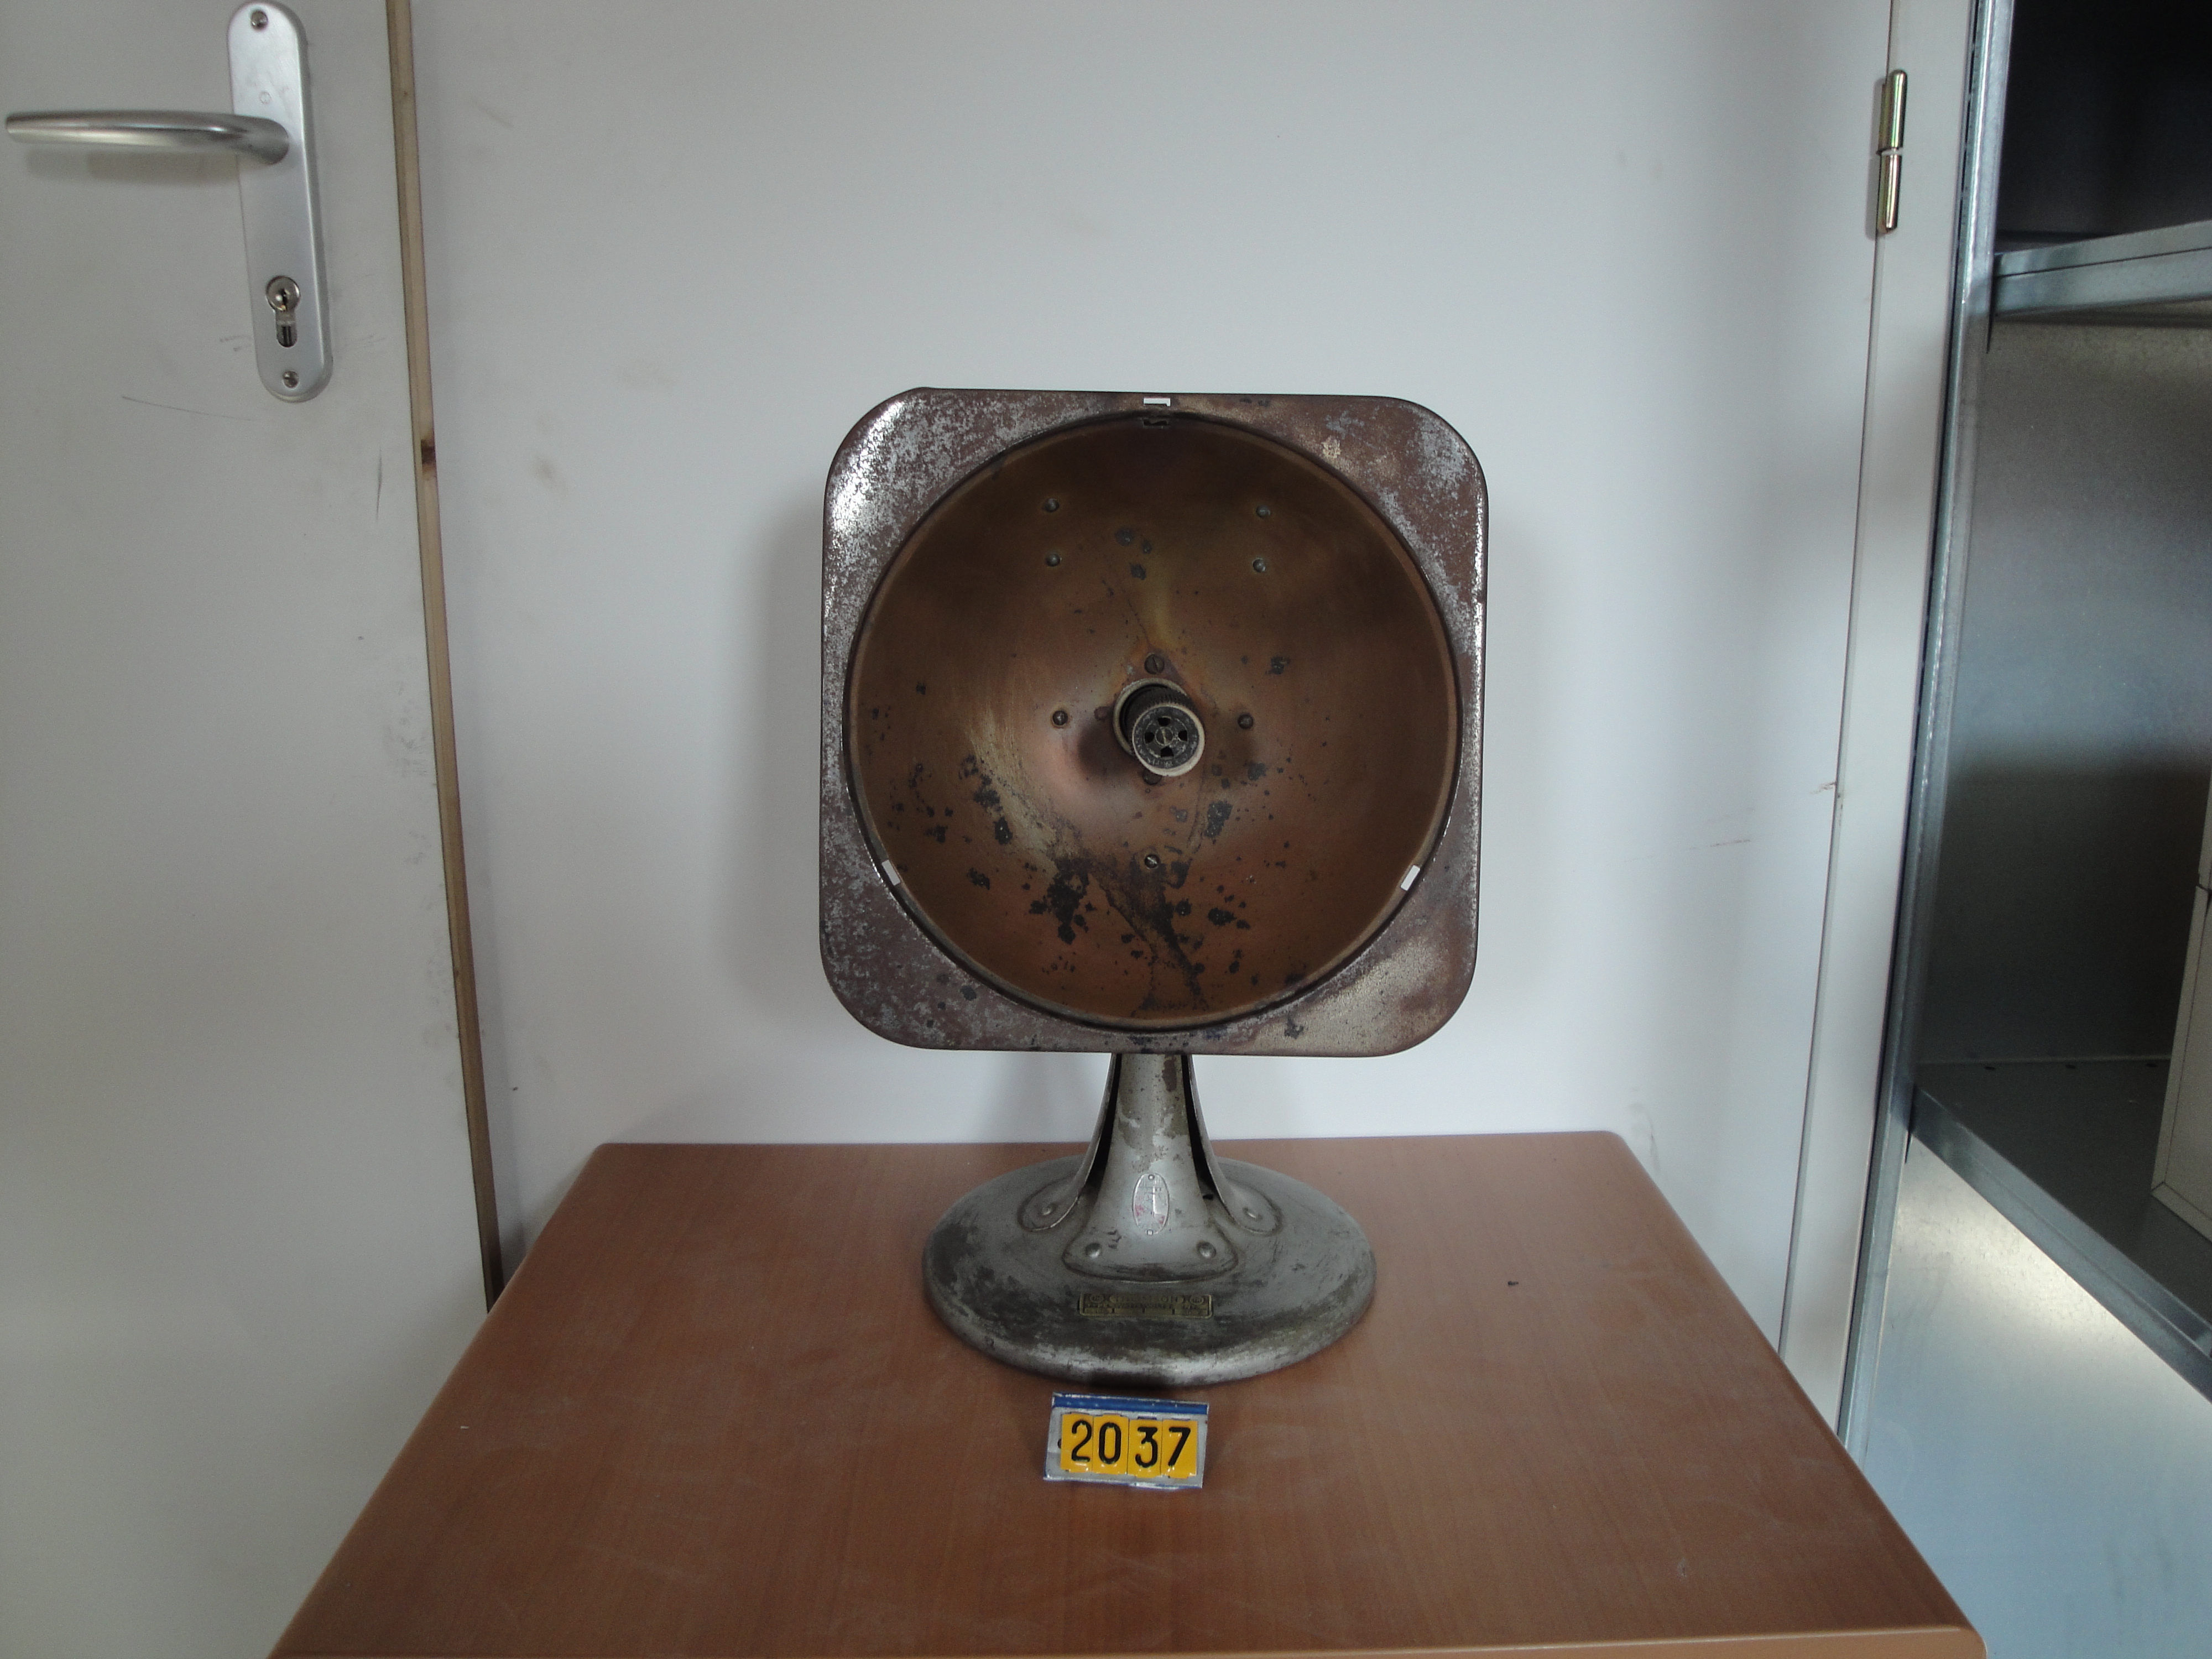  Collection ASPEG, pièce numéro 2037 : radiateur parabolique